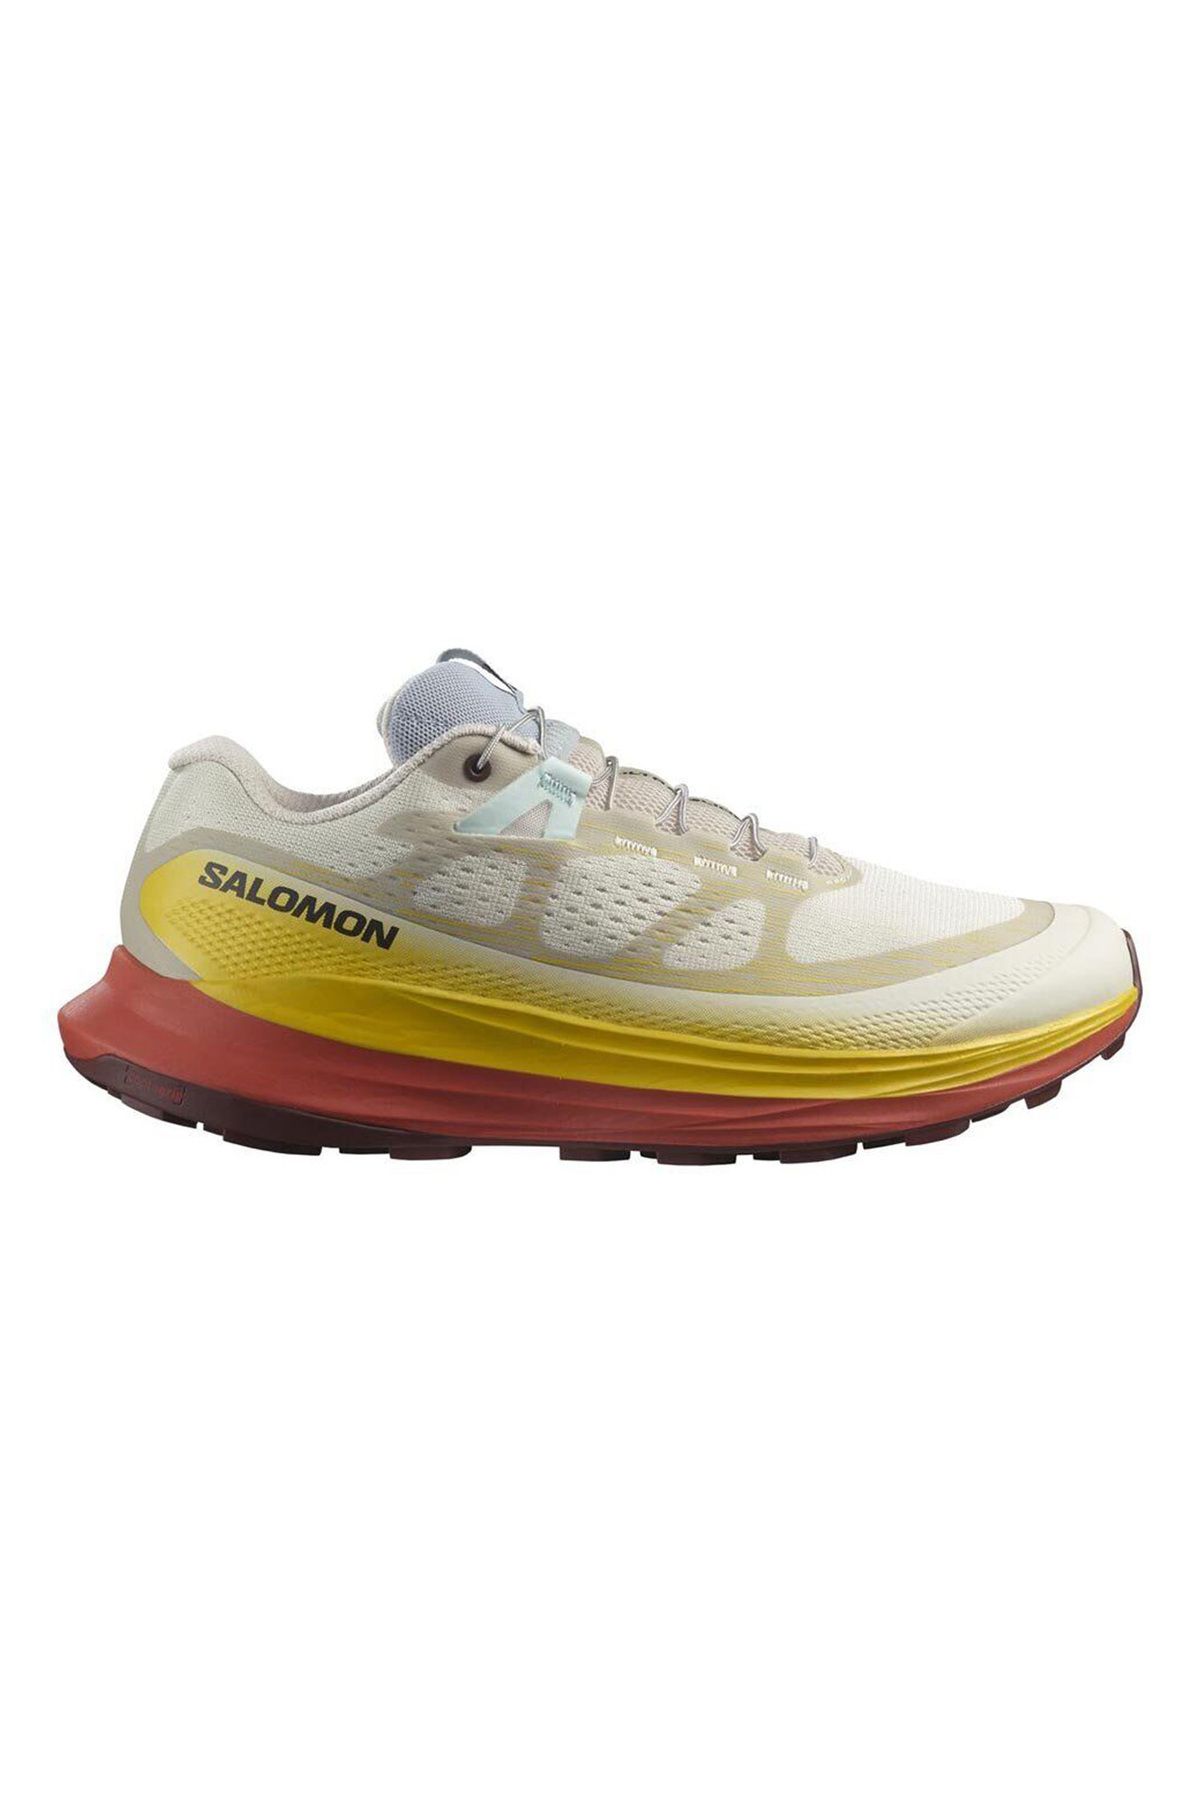 Salomon Ultra Glide 2 Kadın Patika Koşu Ayakkabısı